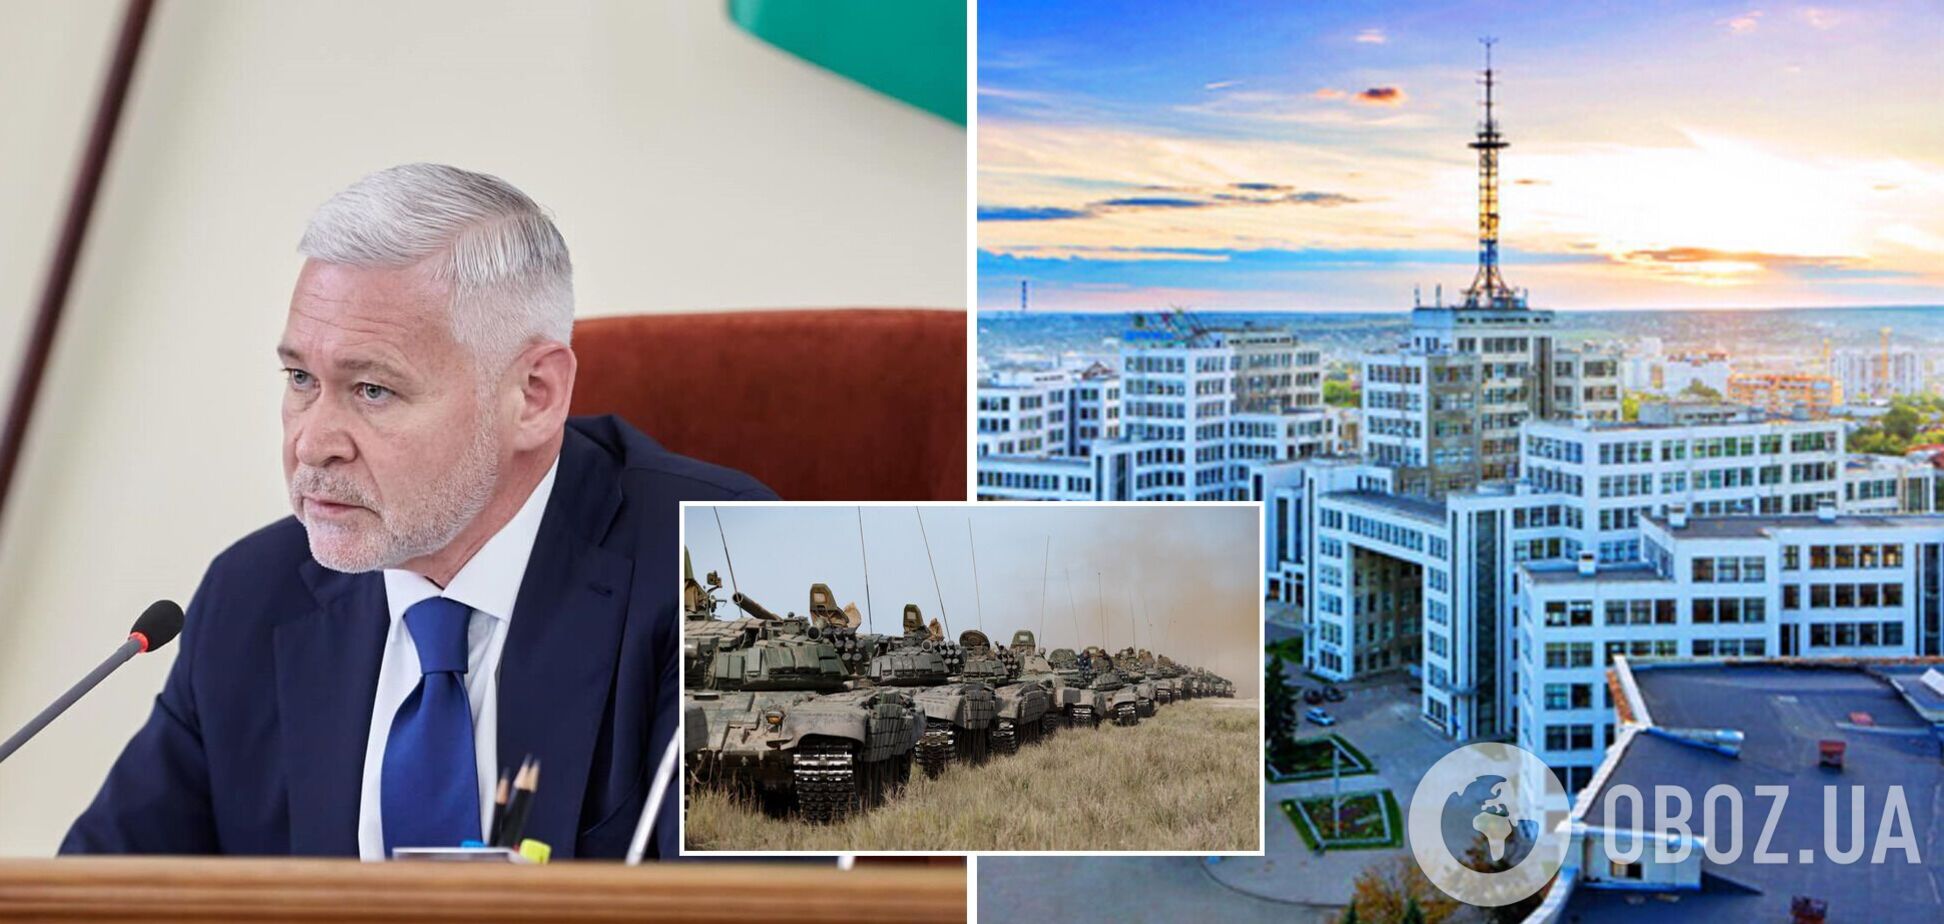 Горвласть Харькова не позволит дестабилизировать ситуацию в городе, заявил Терехов